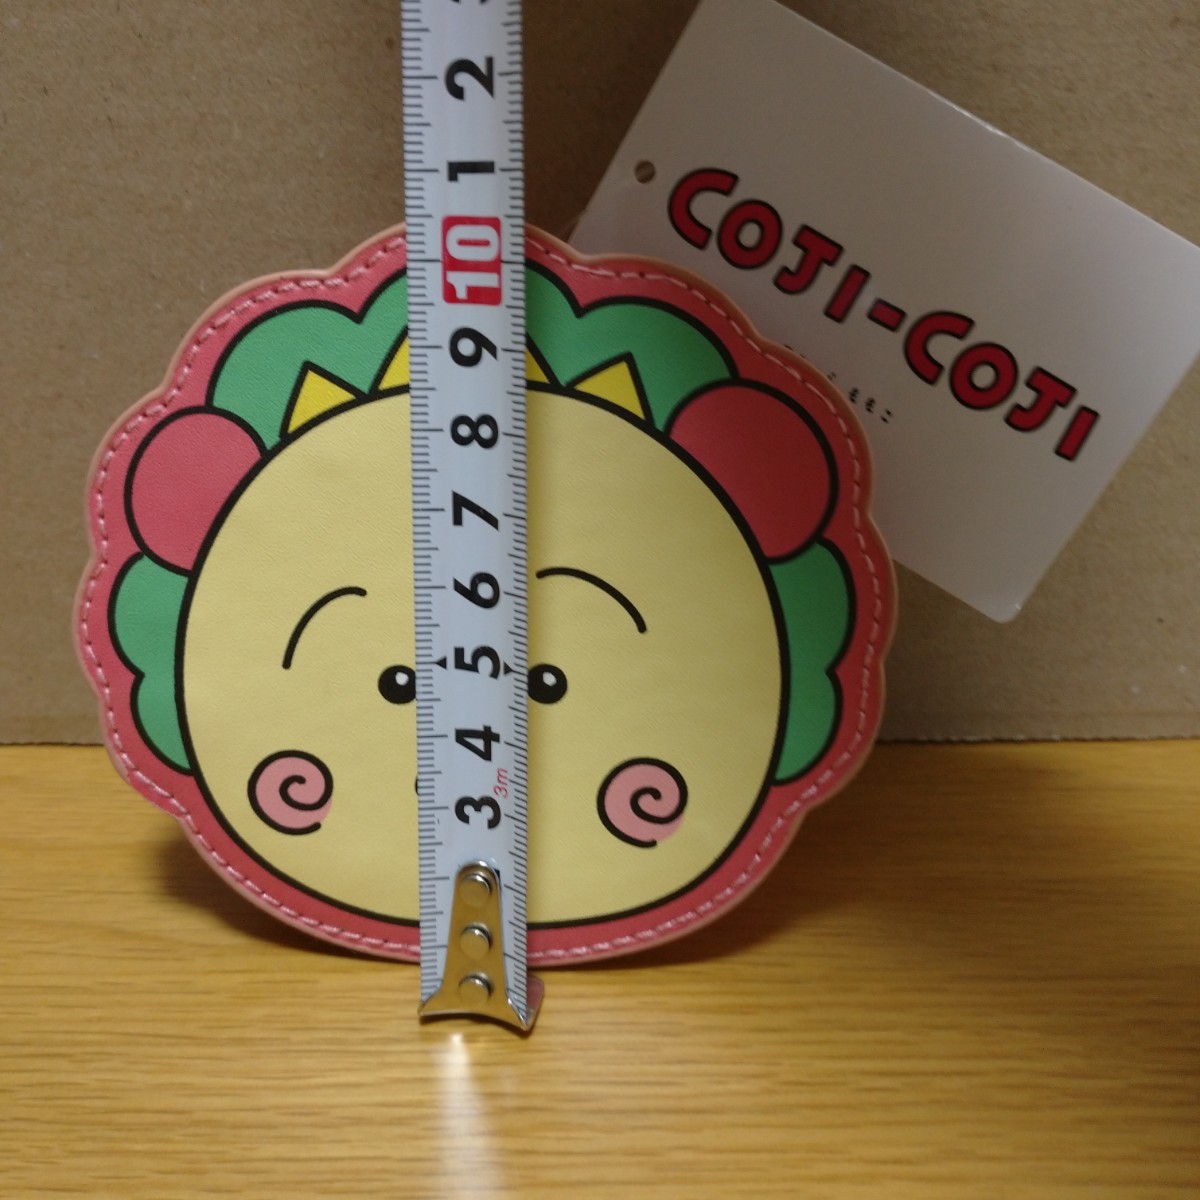 coji-coji Coji-Coji ячейка для монет бардачок сумка cojicoji Sakura ...sakuramomoko товары коллекция эмблема collection